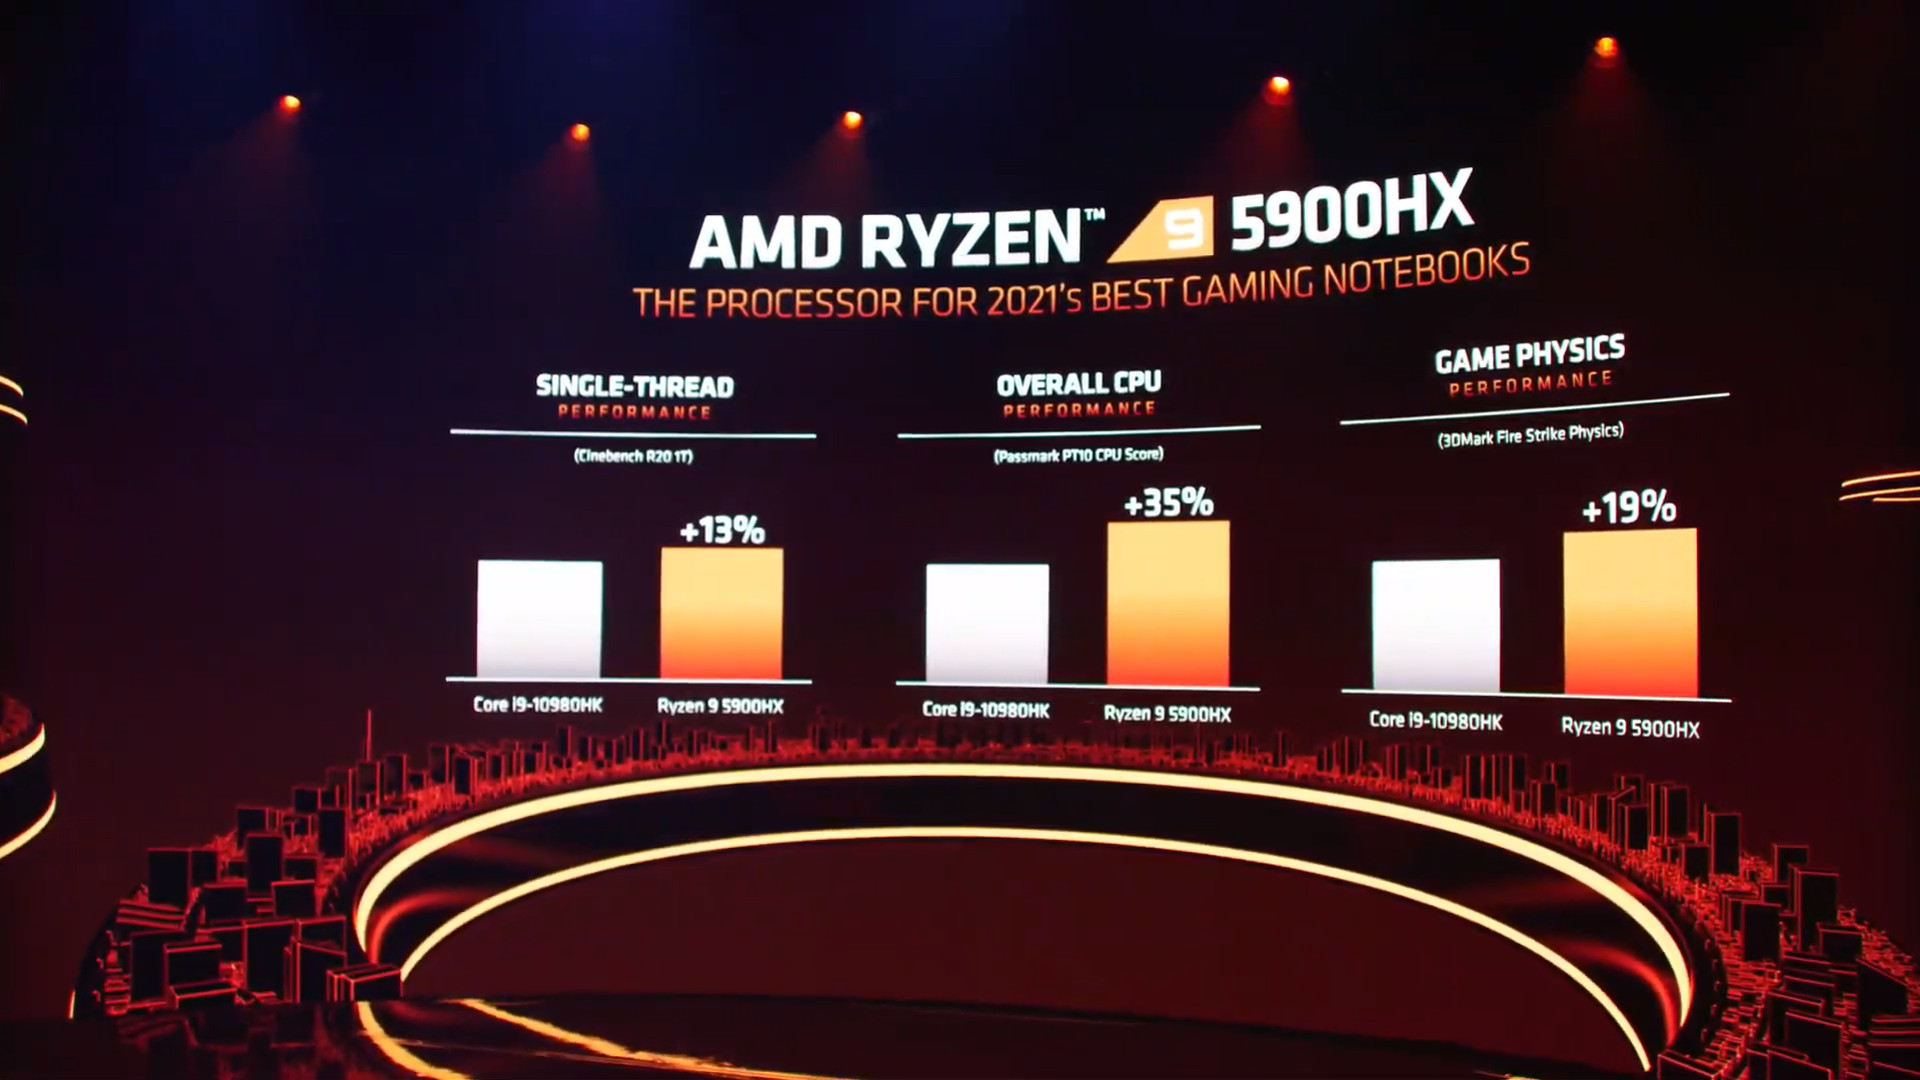 AMD Ryzen 9 5900HX benchmarks